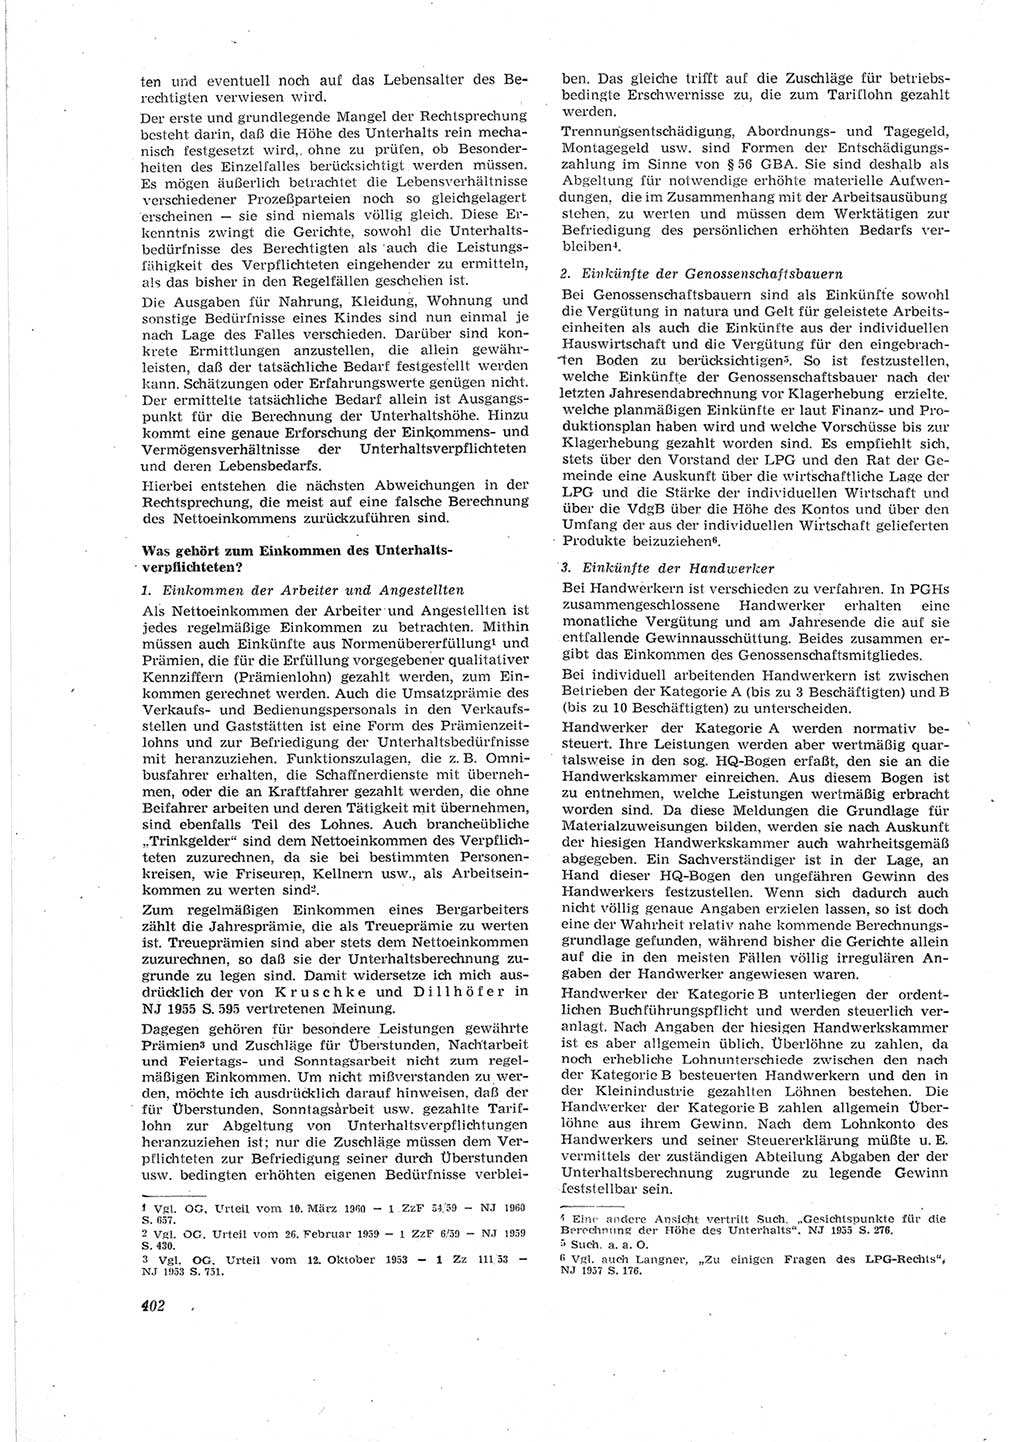 Neue Justiz (NJ), Zeitschrift für Recht und Rechtswissenschaft [Deutsche Demokratische Republik (DDR)], 18. Jahrgang 1964, Seite 402 (NJ DDR 1964, S. 402)